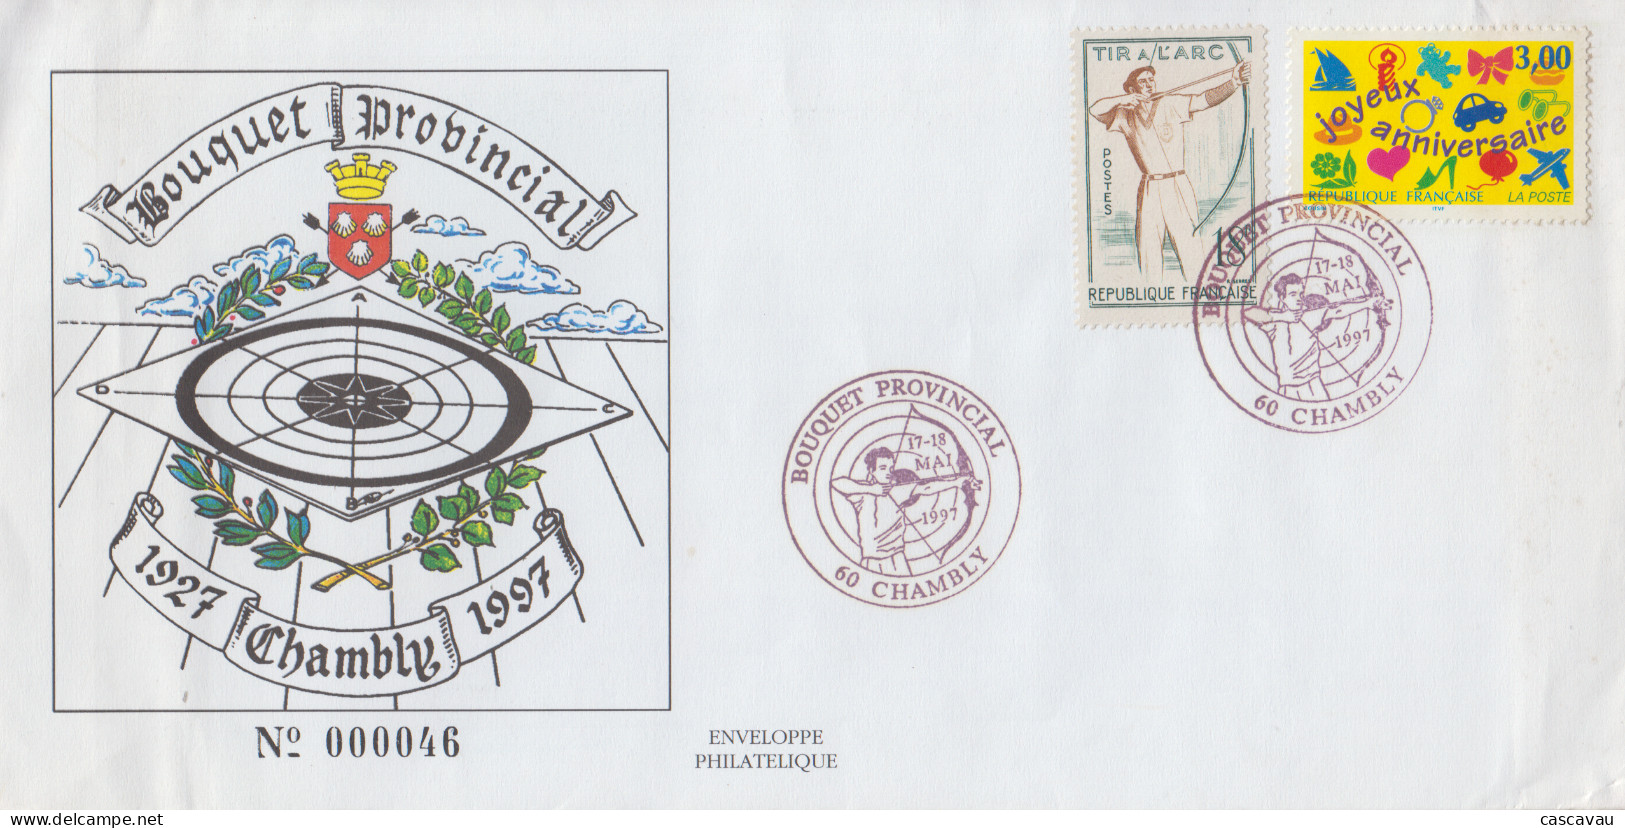 Enveloppe   FRANCE    TIR  A  L' ARC      BOUQUET  PROVINCIAL     CHAMBLY   1997 - Tir à L'Arc